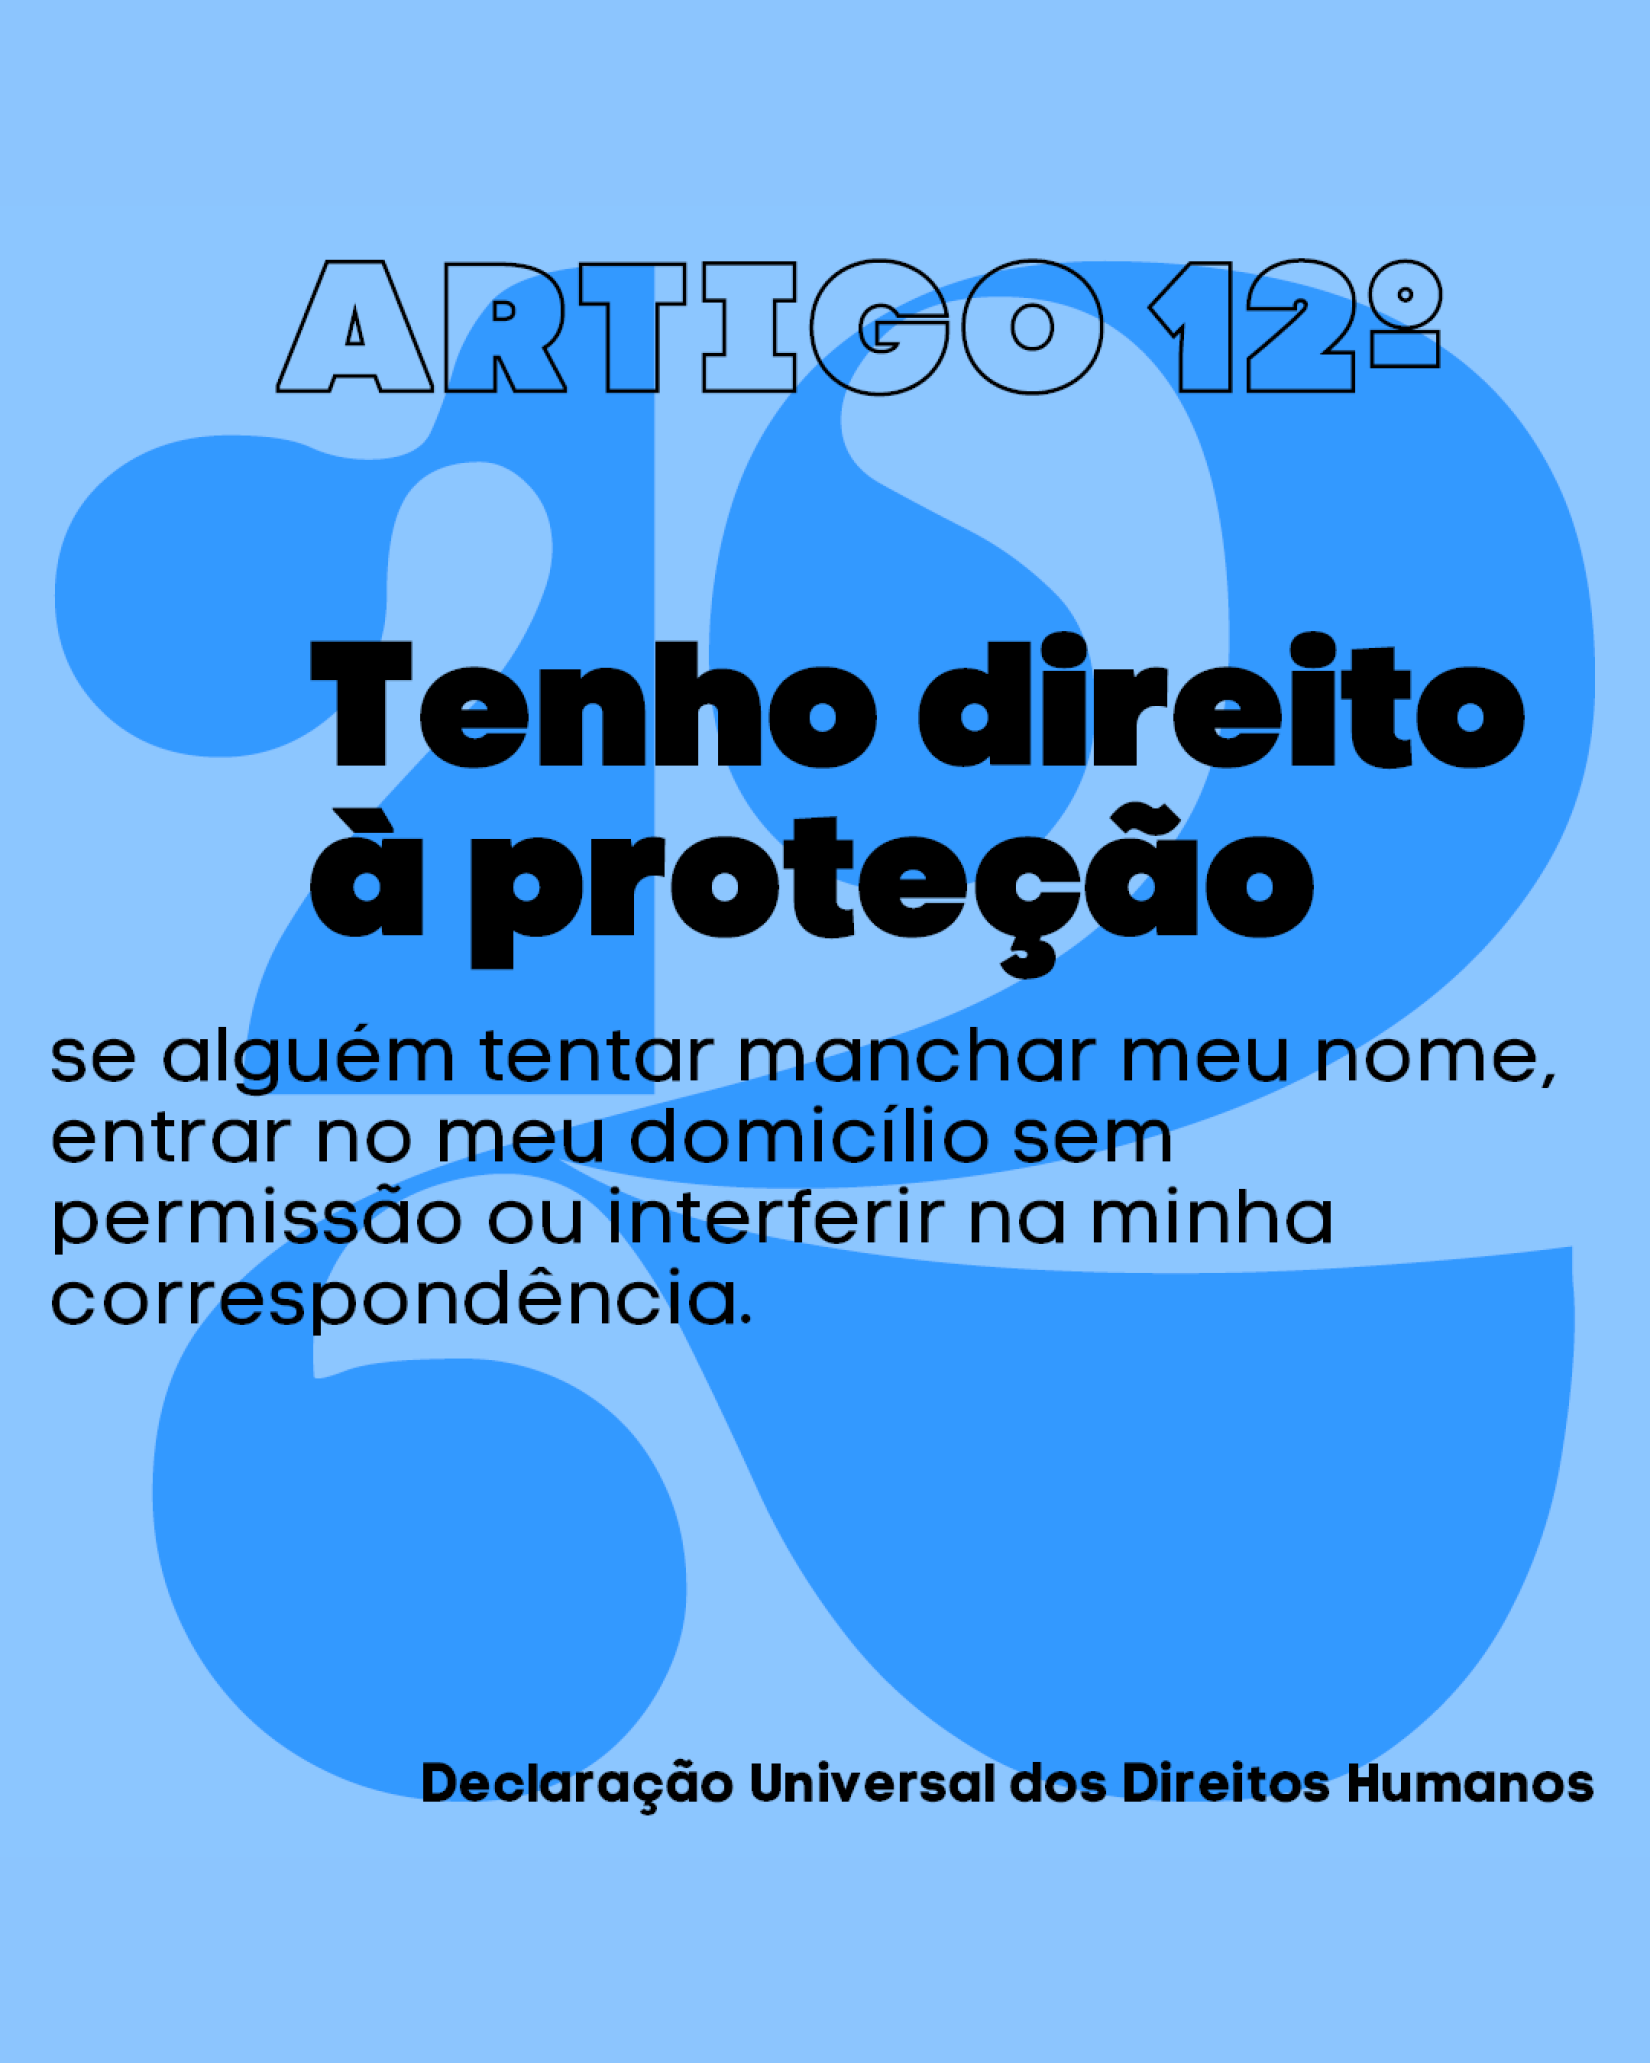 Artigo 12º da Declaração Universal dos Direitos Humanos